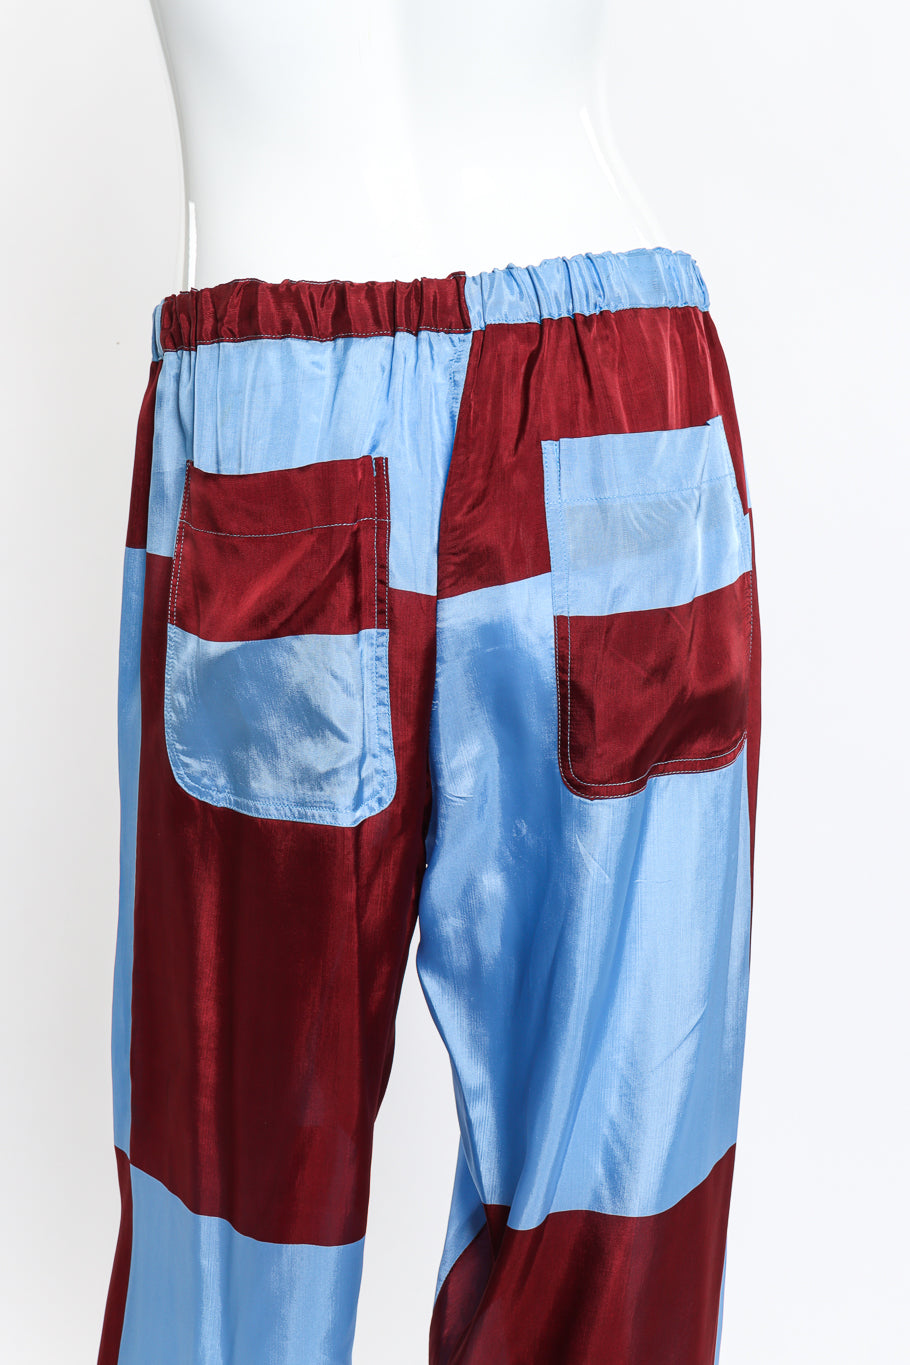 Comme des Garcons Colorblock Checker Pants back on mannequin closeup @recess la